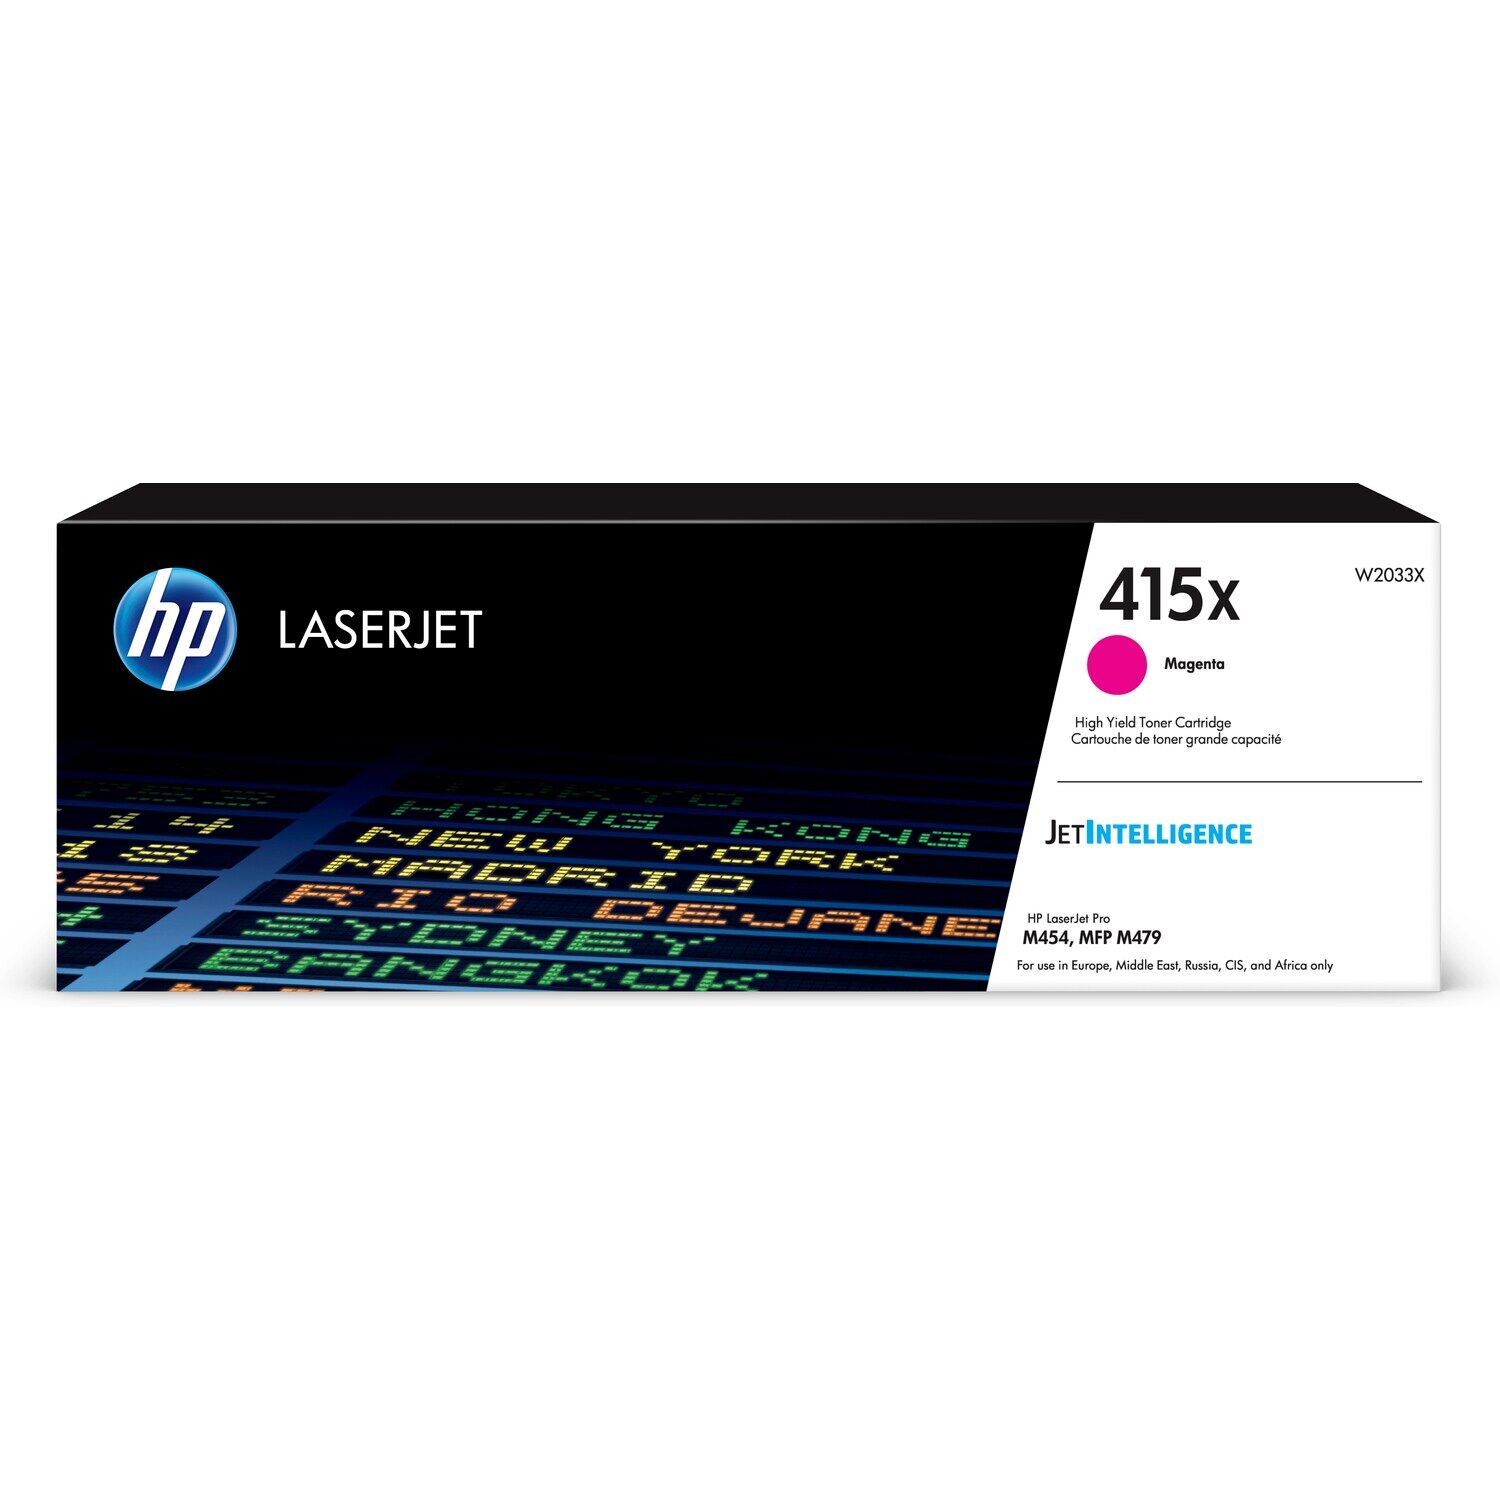 Картридж для печати HP Картридж HP 415X W2033X вид печати лазерный, цвет Пурпурный, емкость